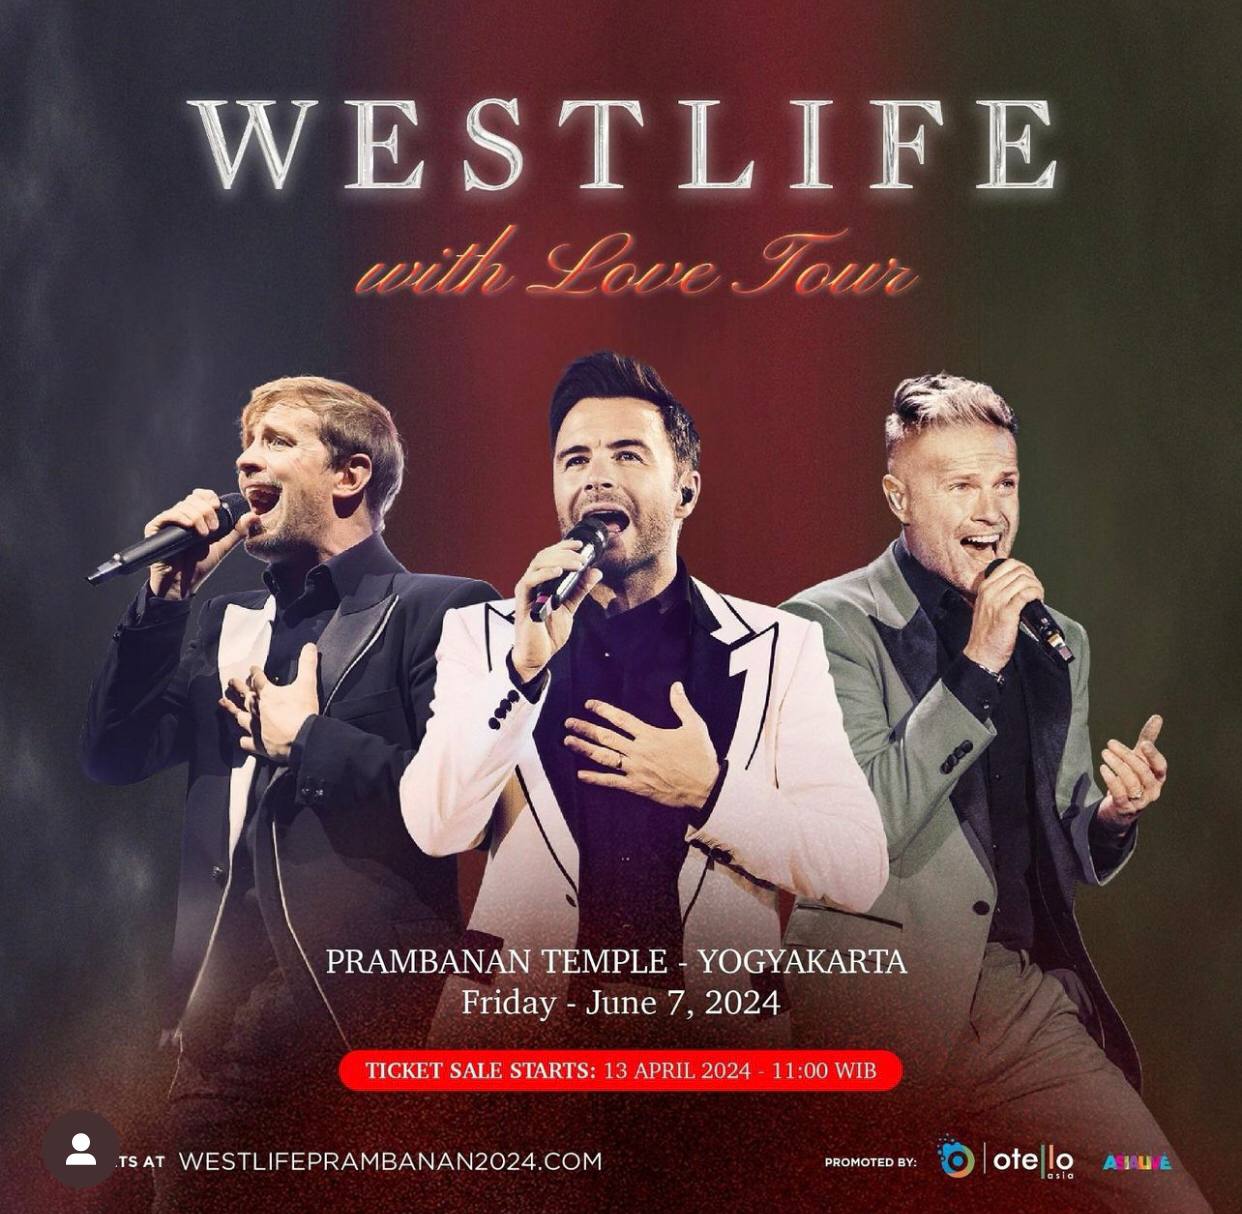 Westlife Gelar Konser 'With Love Tour' di Yogyakarta Juni 2024, Simak Harga Tiketnya!